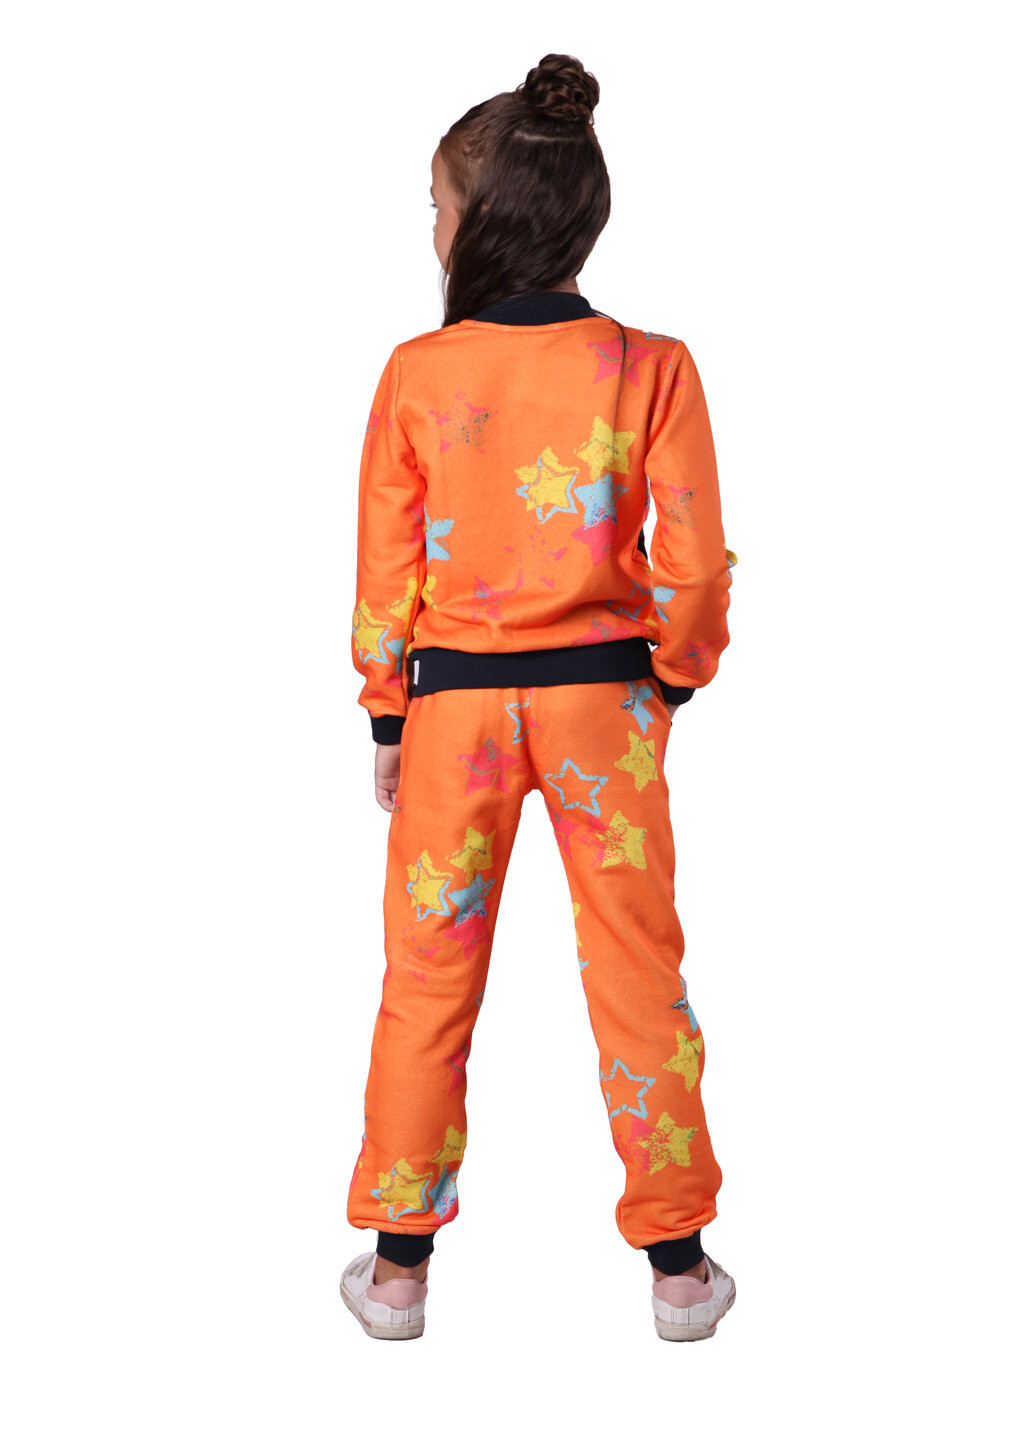 Оранжевый демисезонный костюм (толстовка, брюки) брючный Kids Couture